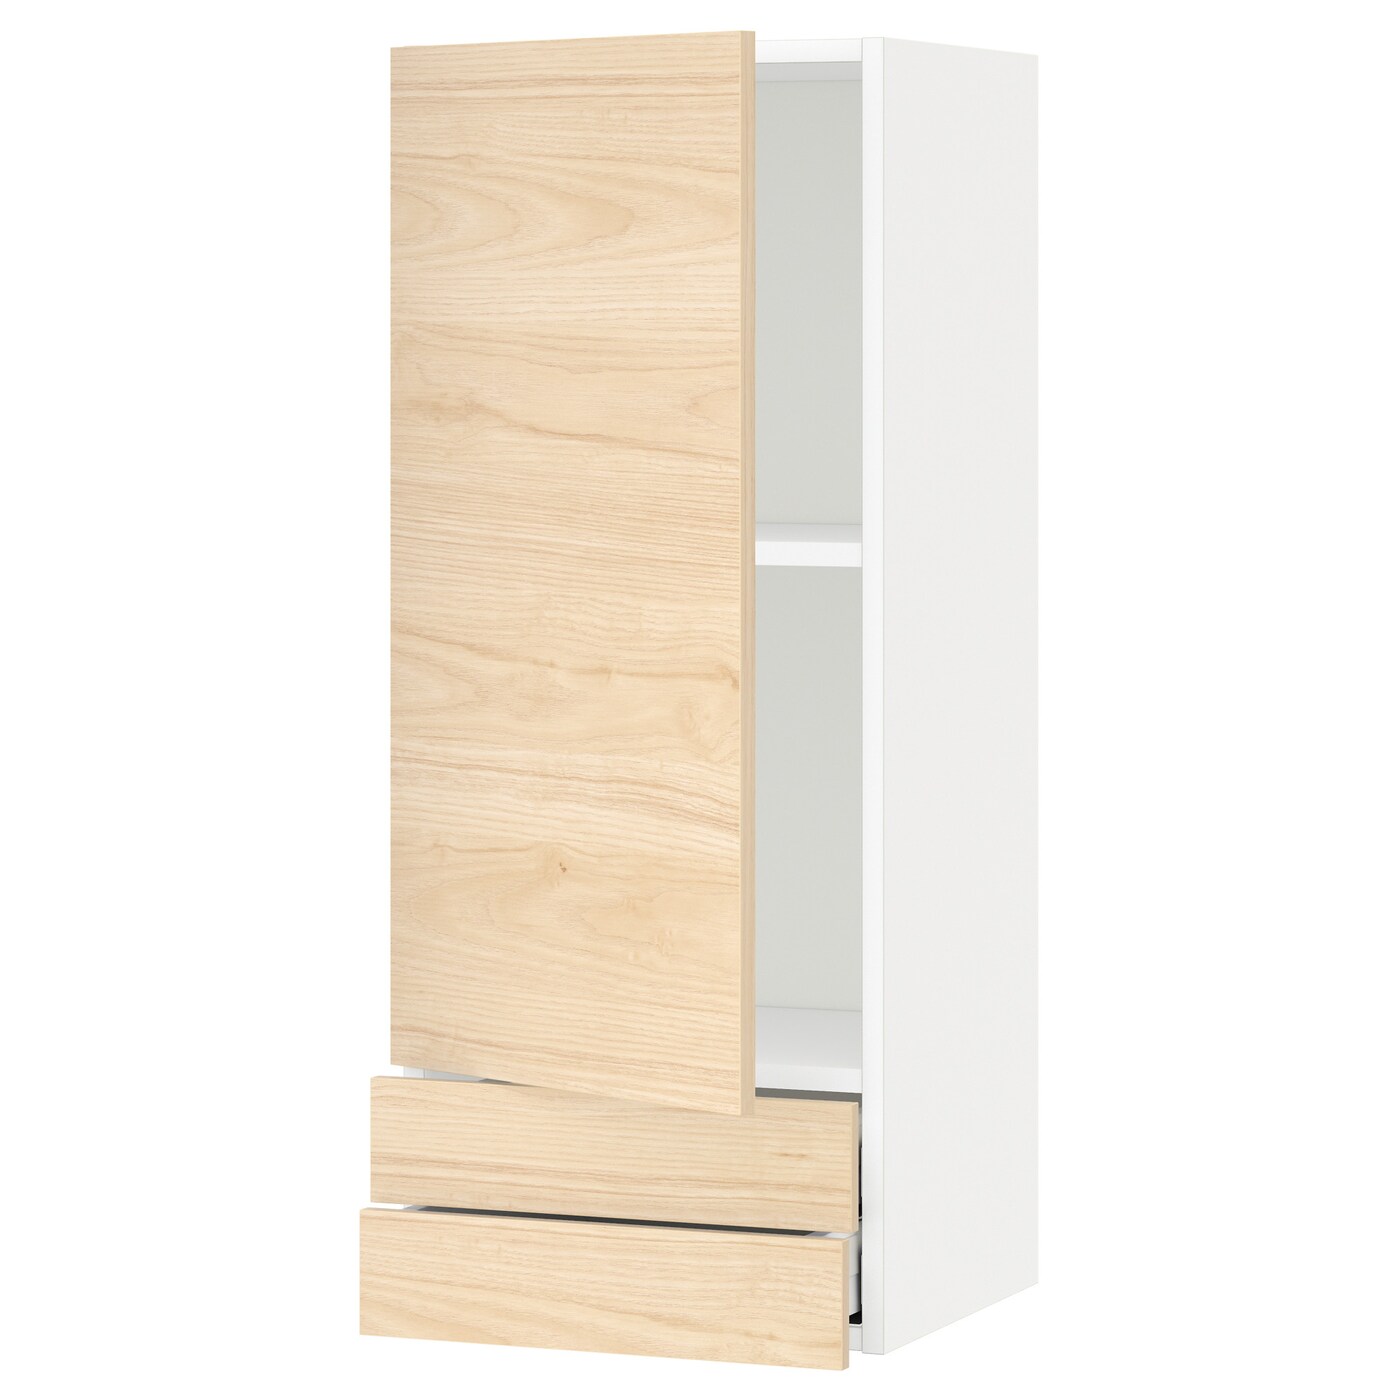 Навесной шкаф с полкой - METOD/MAXIMERA  IKEA/ МЕТОД /МАКСИМЕРА ИКЕА, 100х40 см, белый/под беленый дуб